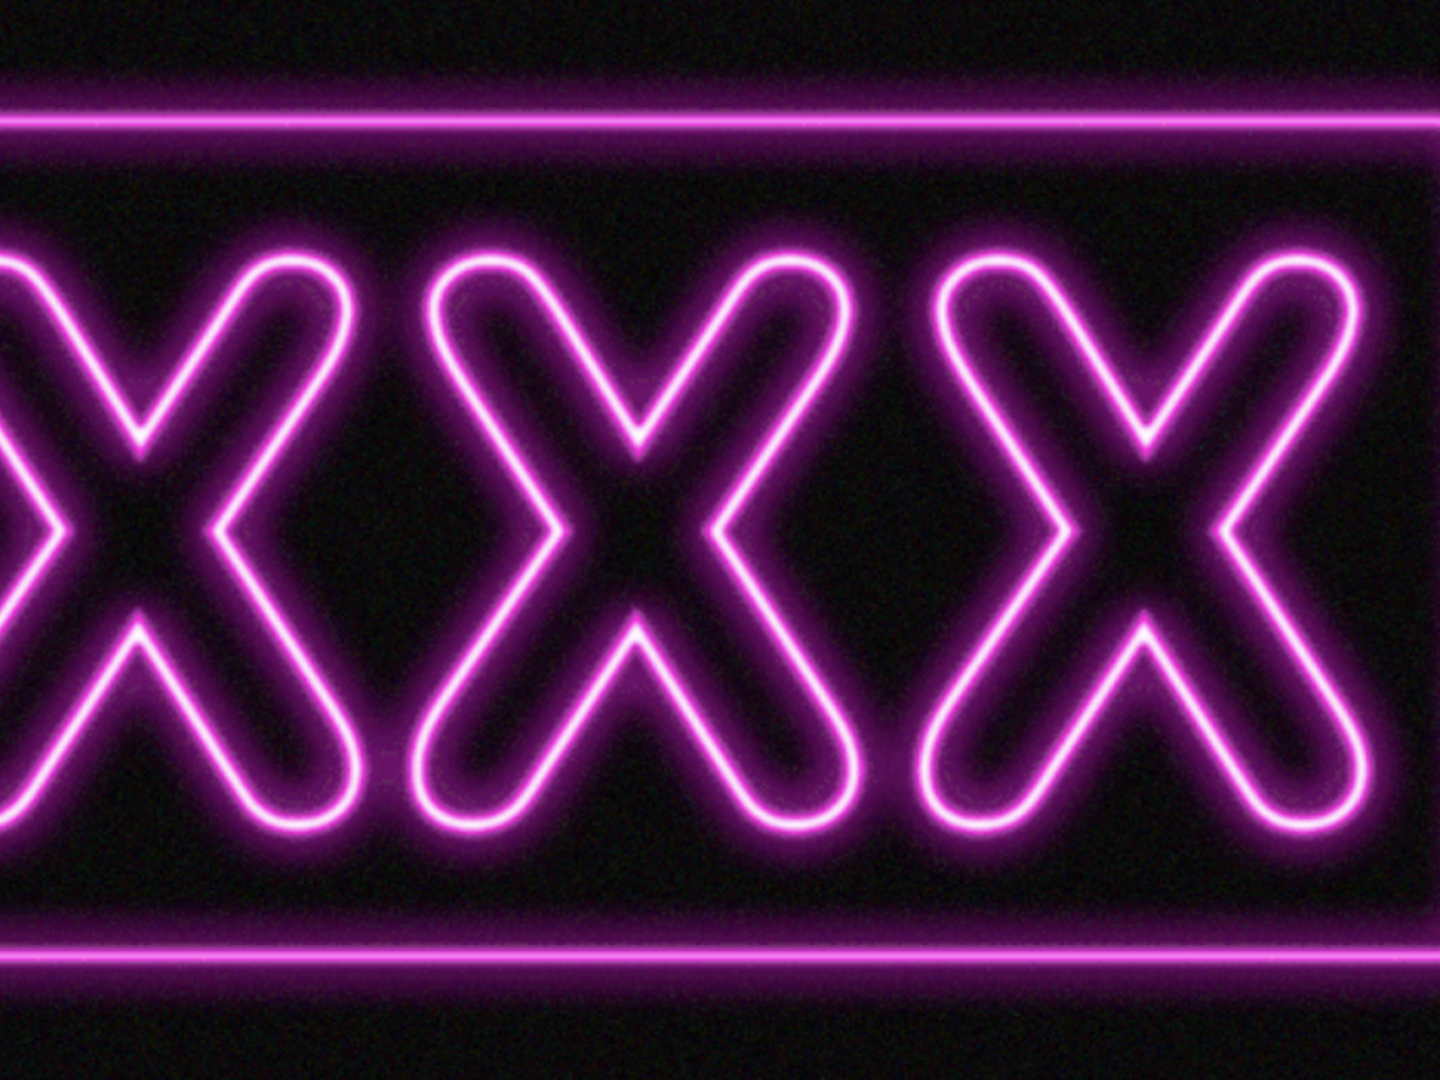 Xxxx Mohile - Epic Games explains store's ban on porn games